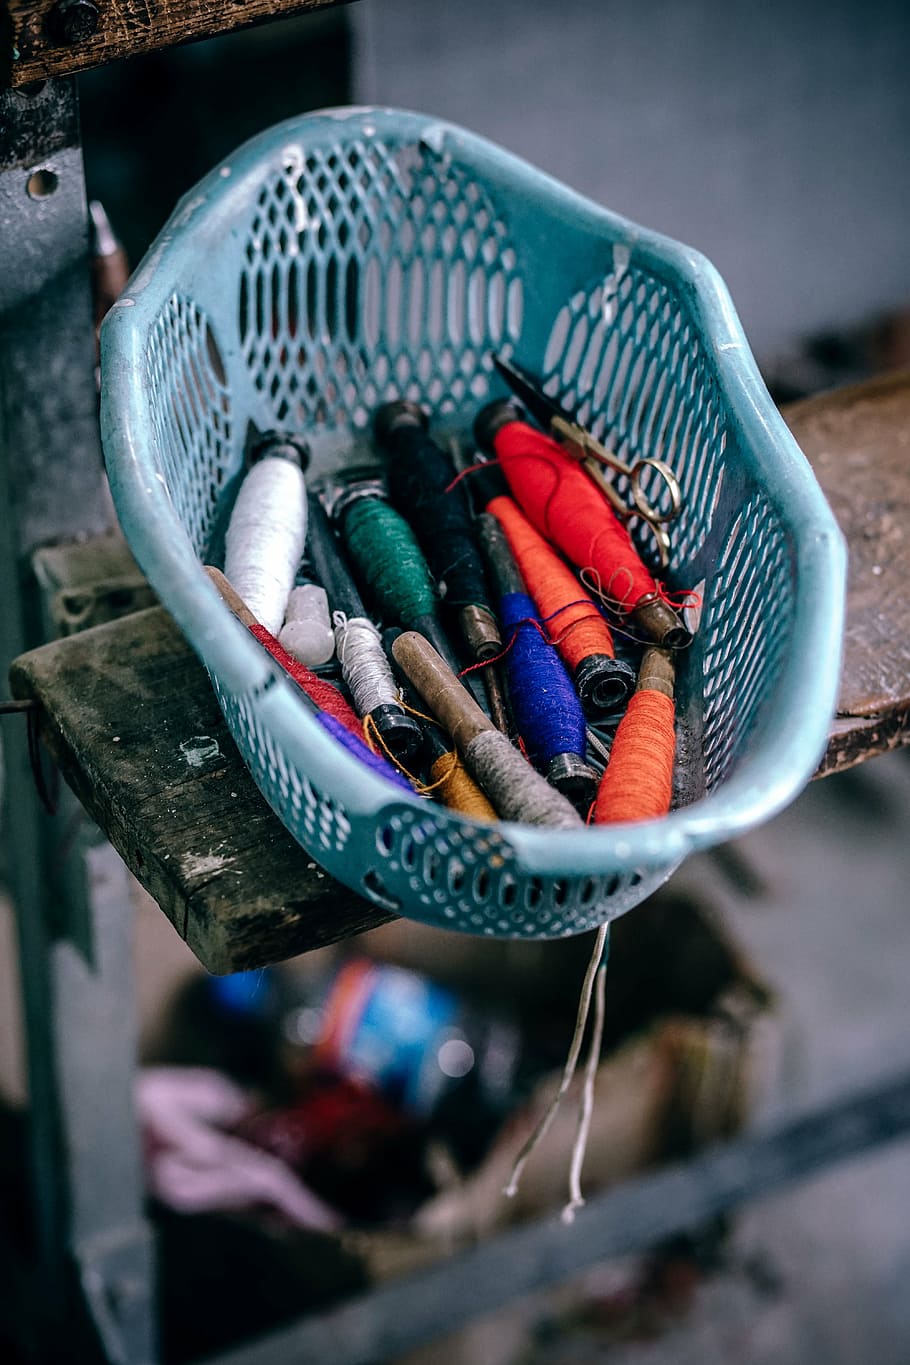 hilos, azul, canasta de plástico, hilo, bandeja, coser, corbata, industrial, fábrica, desenfoque